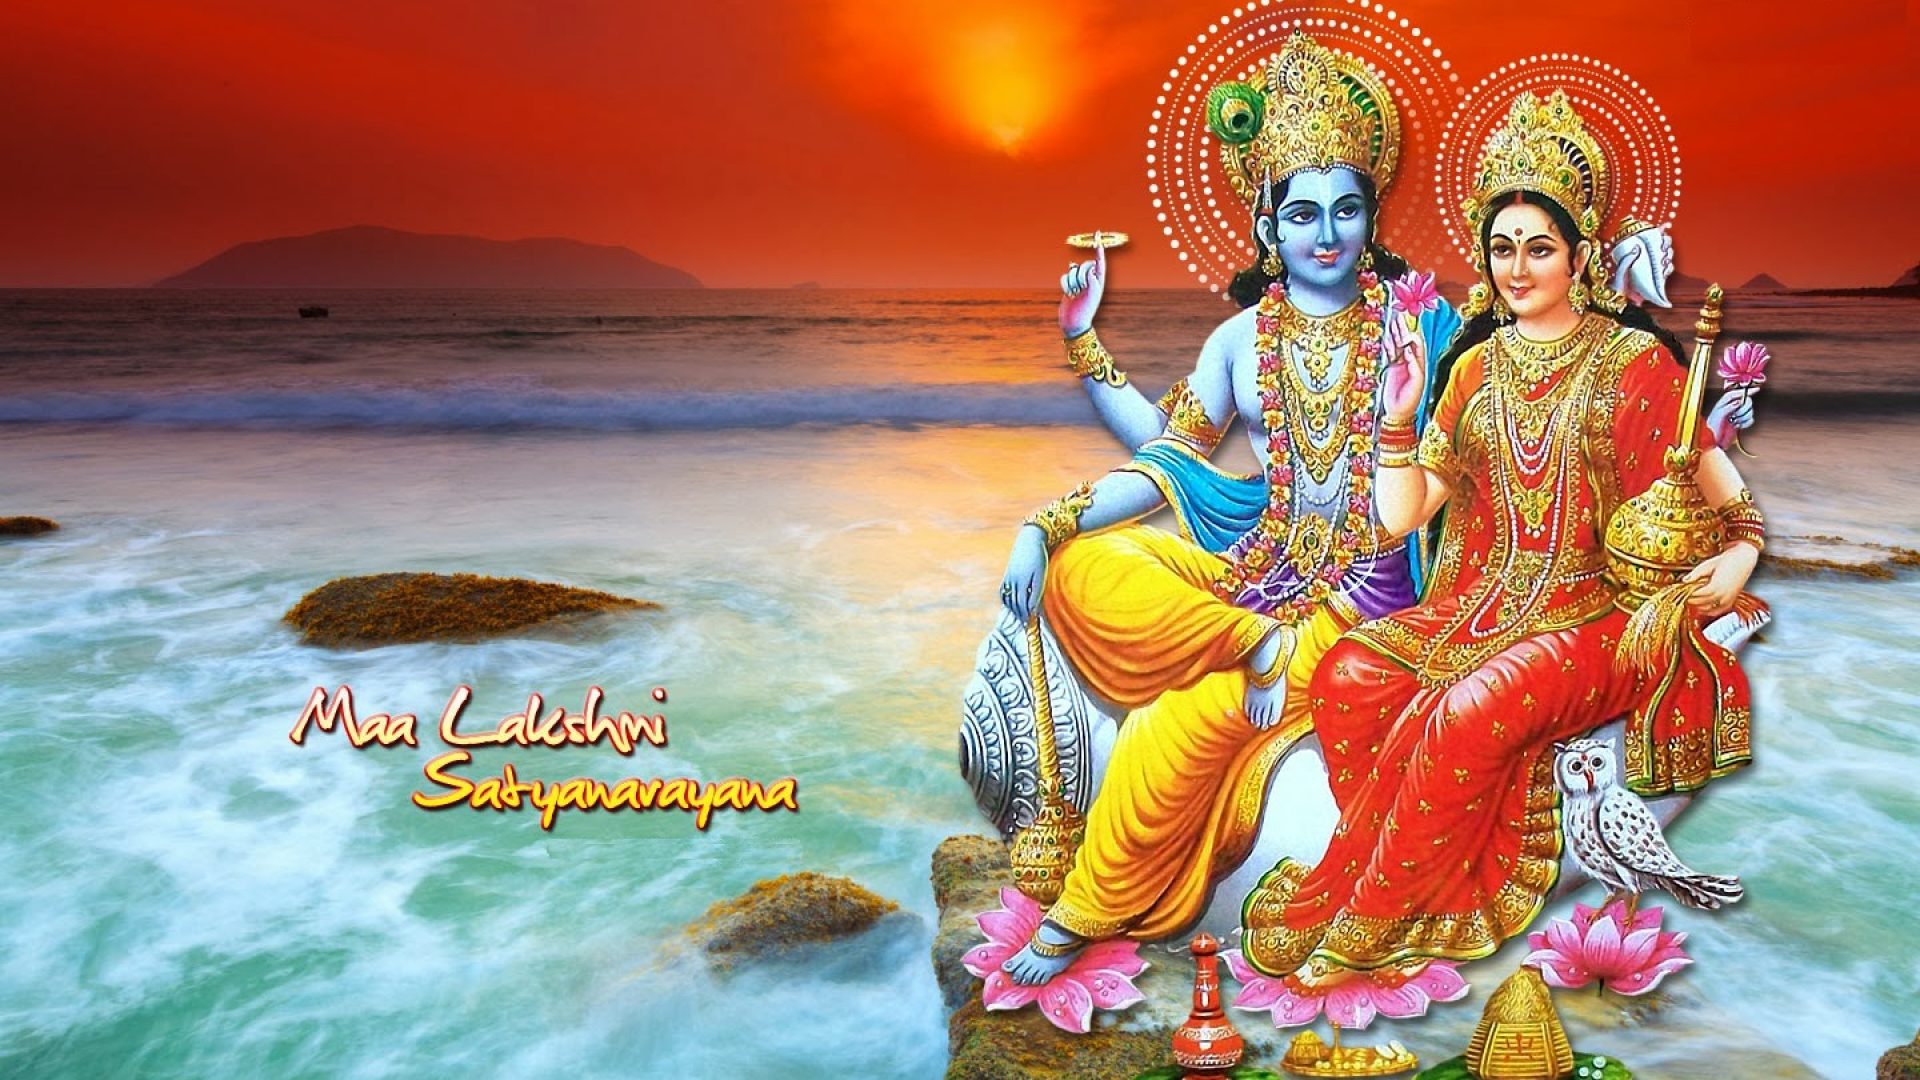 Maa Laxmi Images Hd Free Download Goddess Maa Lakshmi